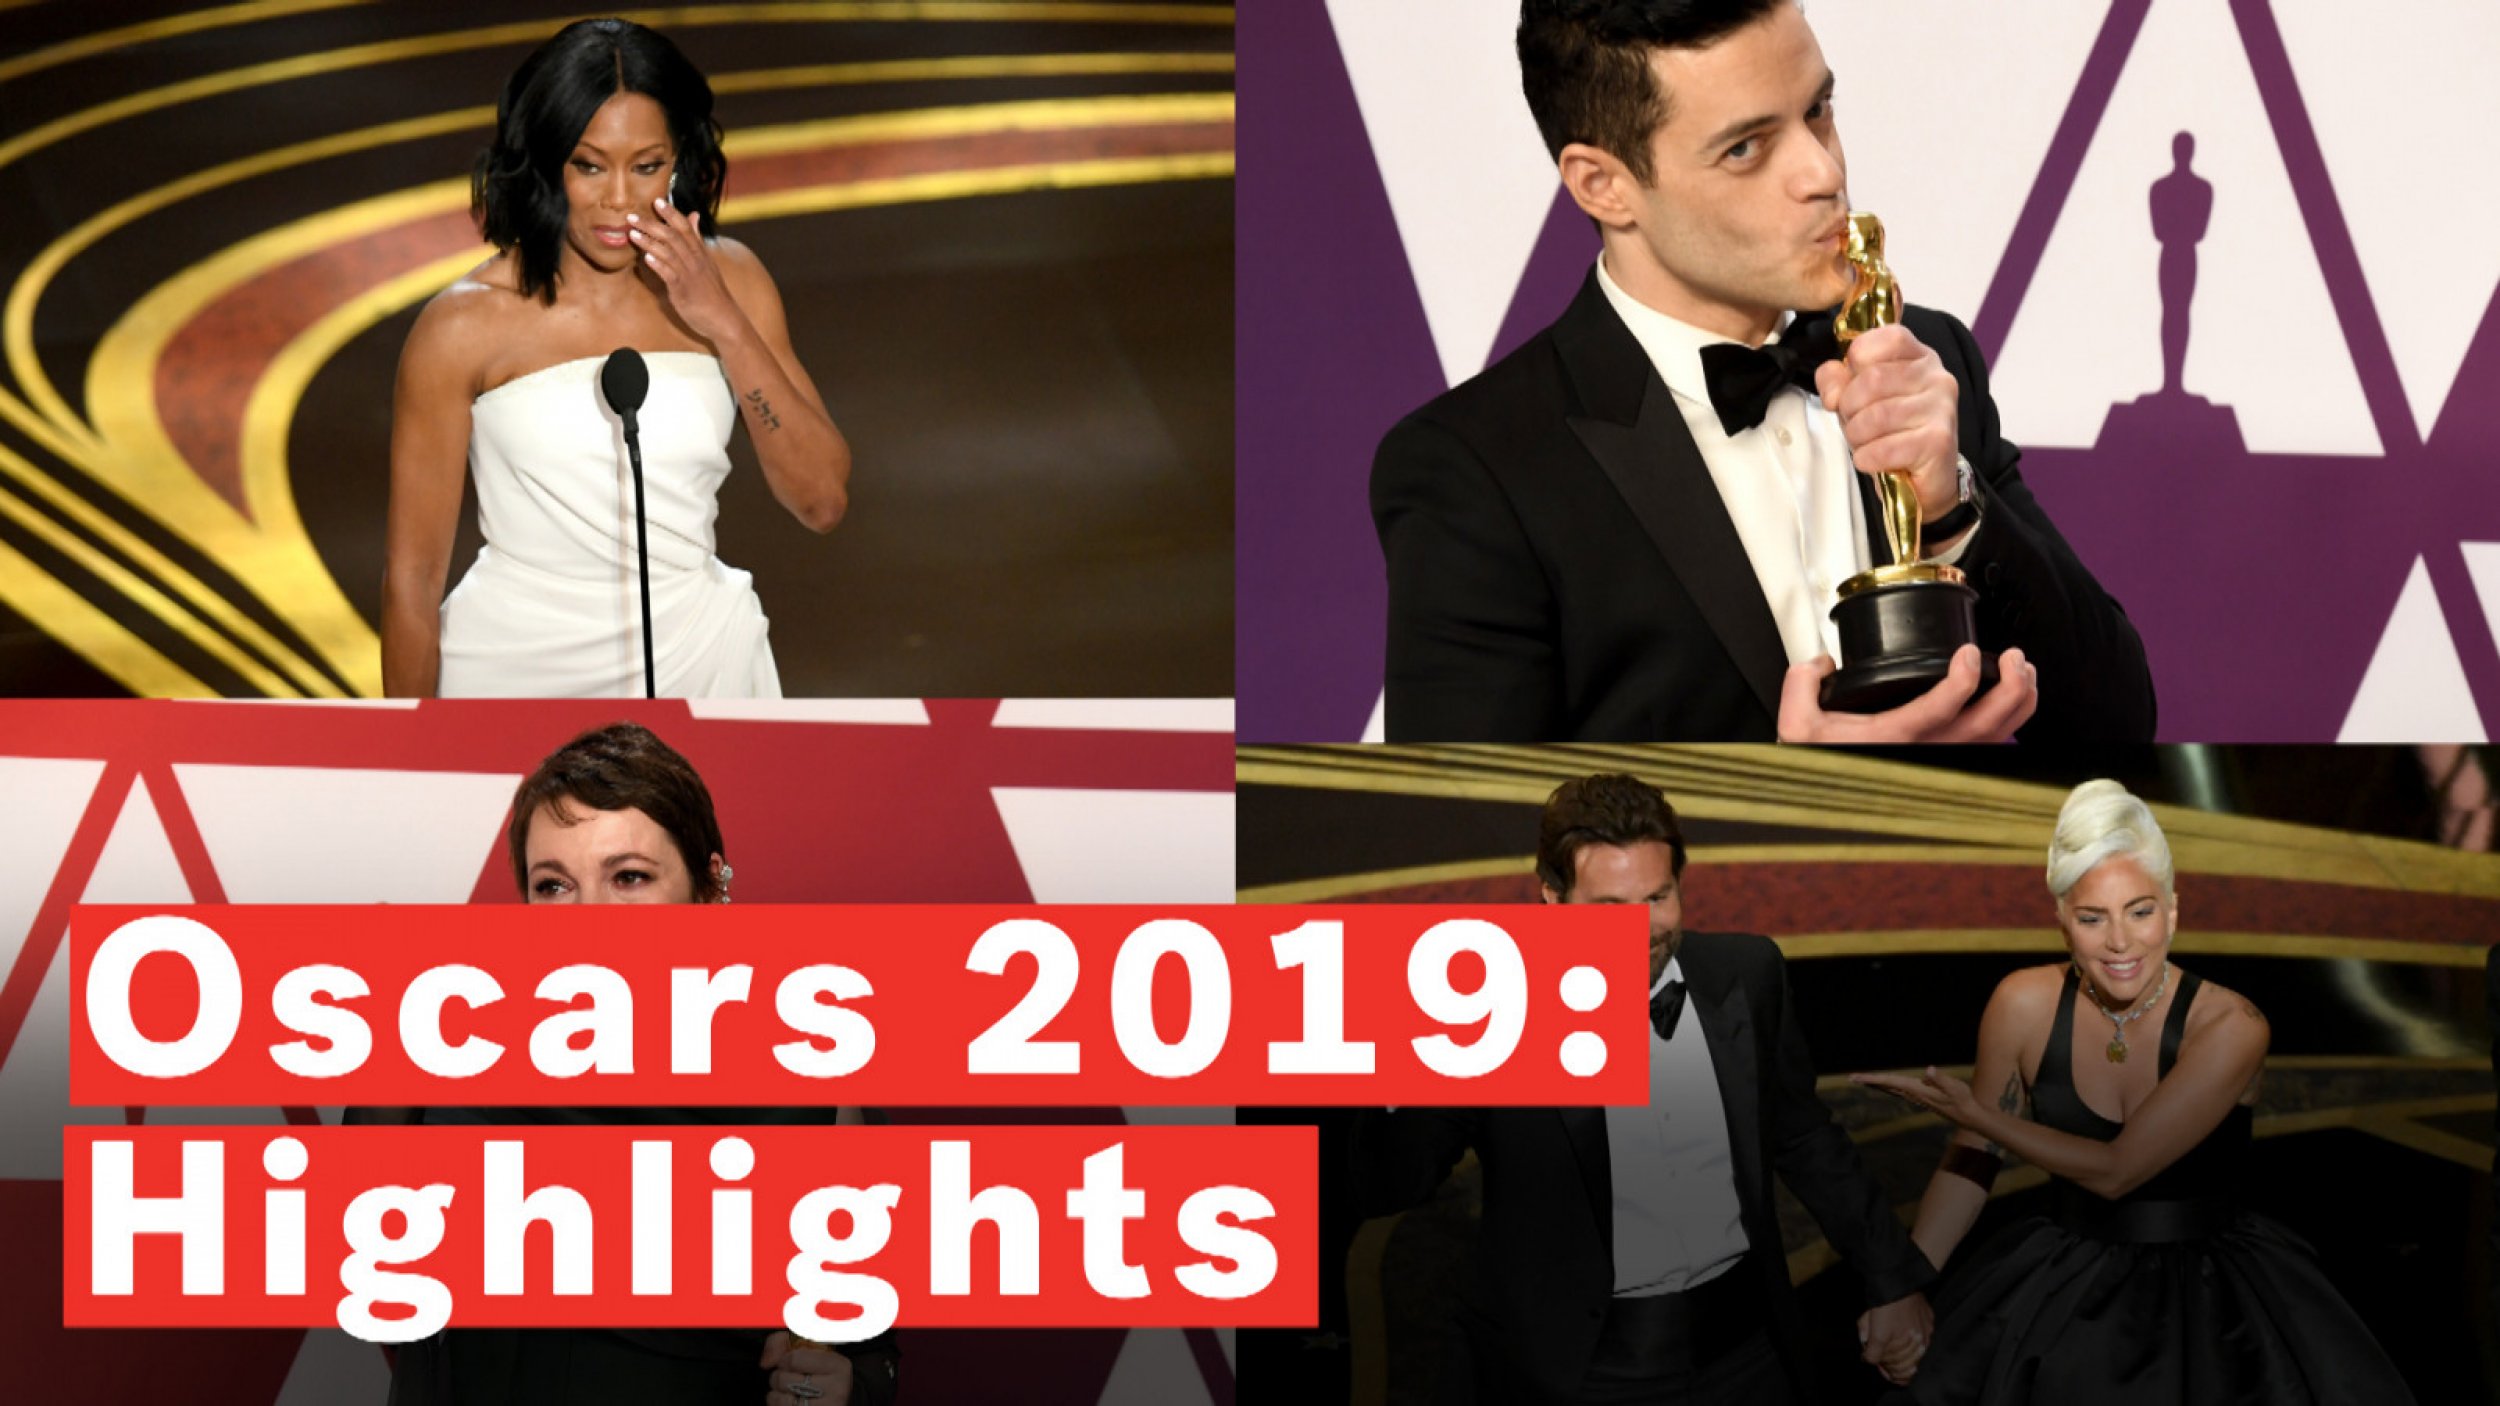 Oscars 2019 Highlights